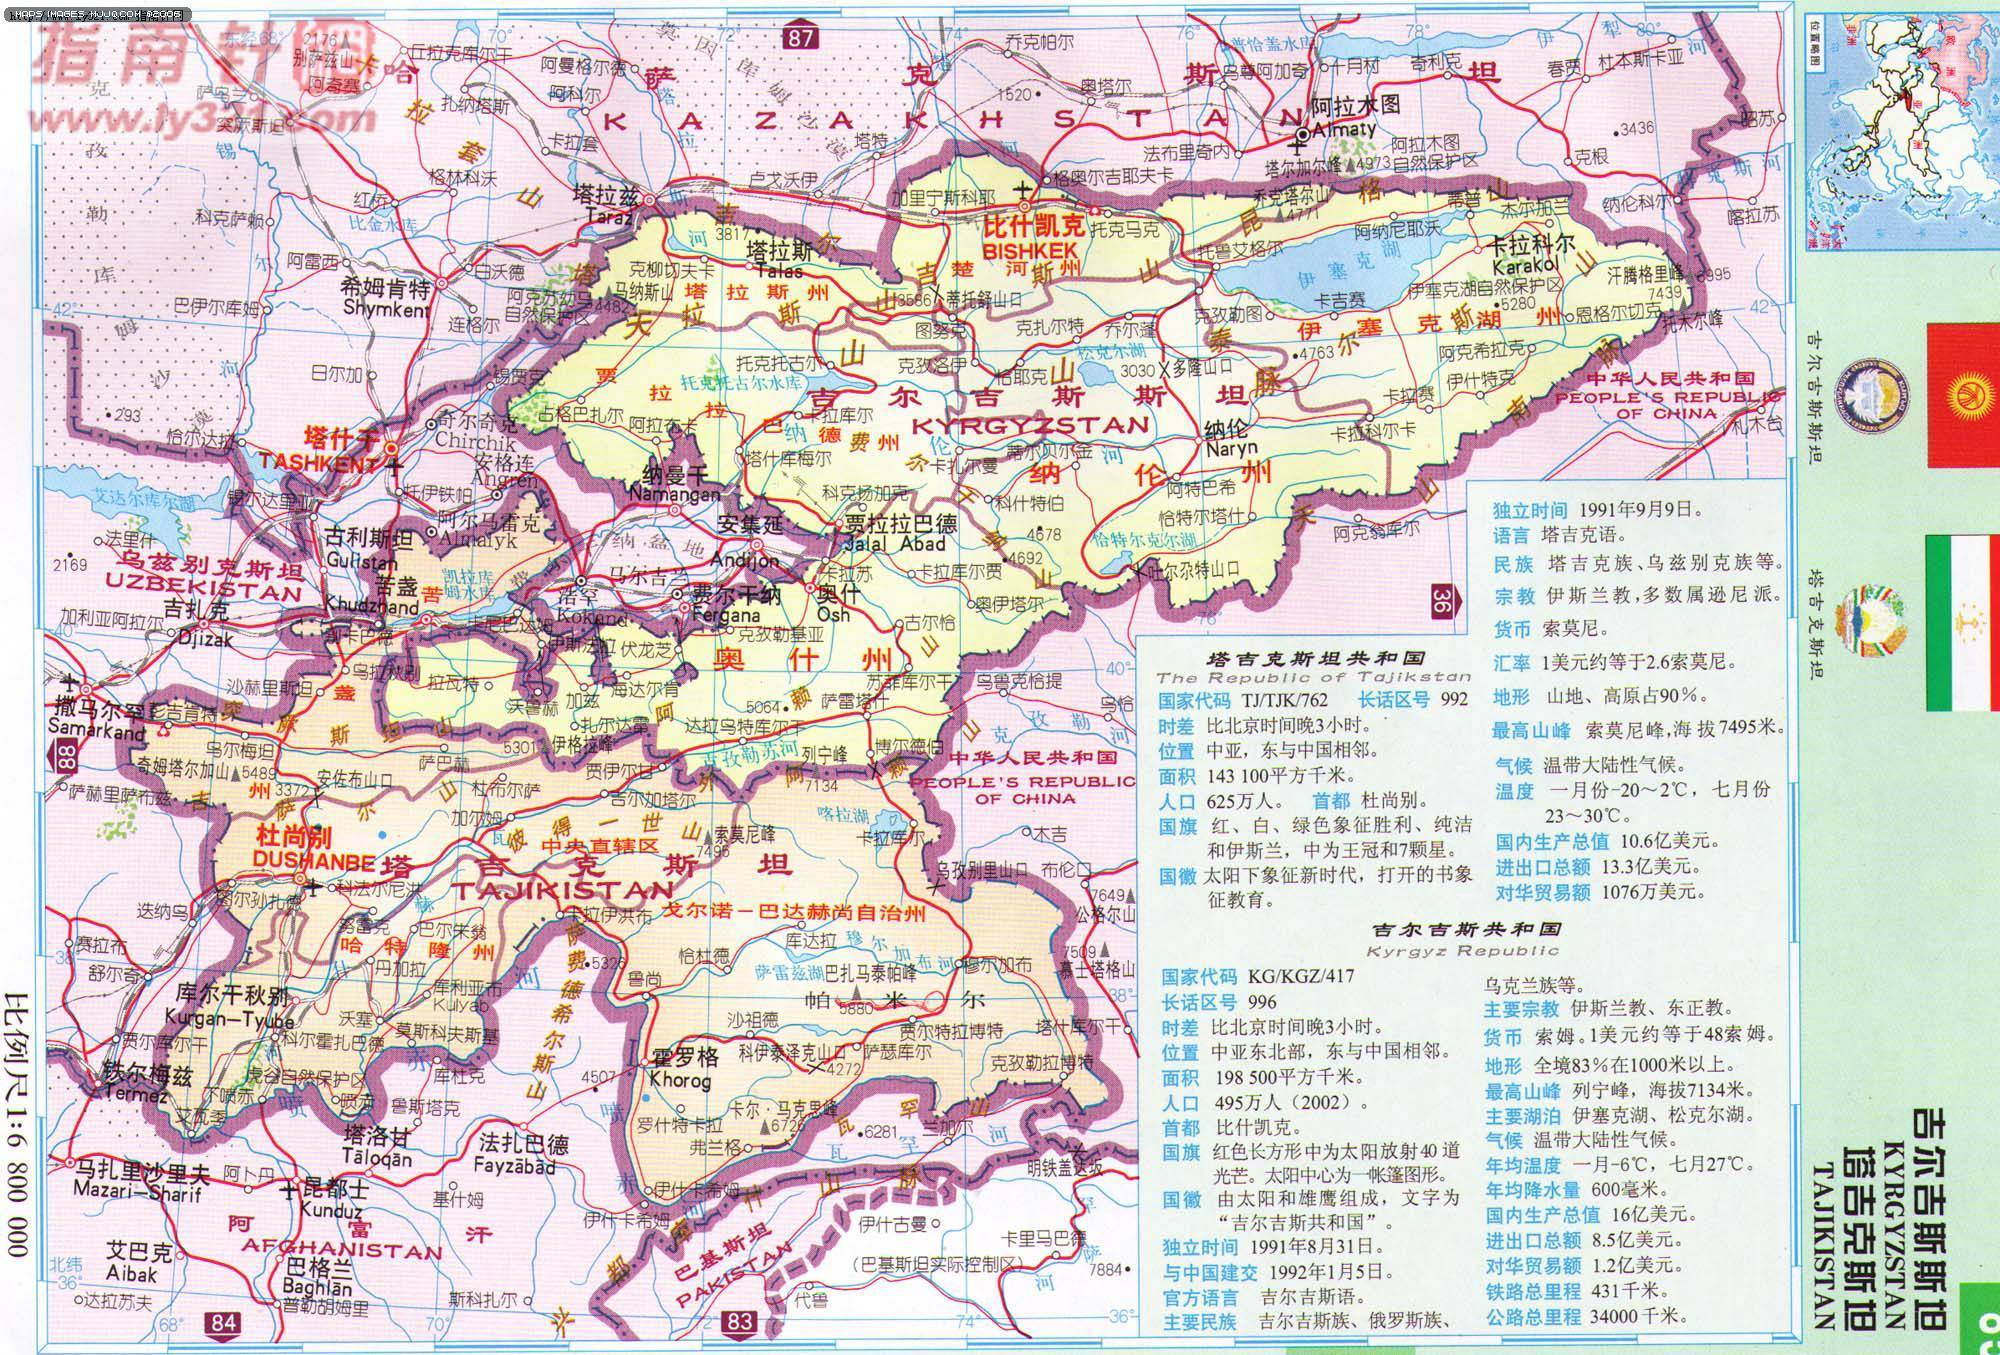 吉尔吉斯斯坦 kyrgyzstan 4,822,938 199,900 比什凯克 bishkek人口